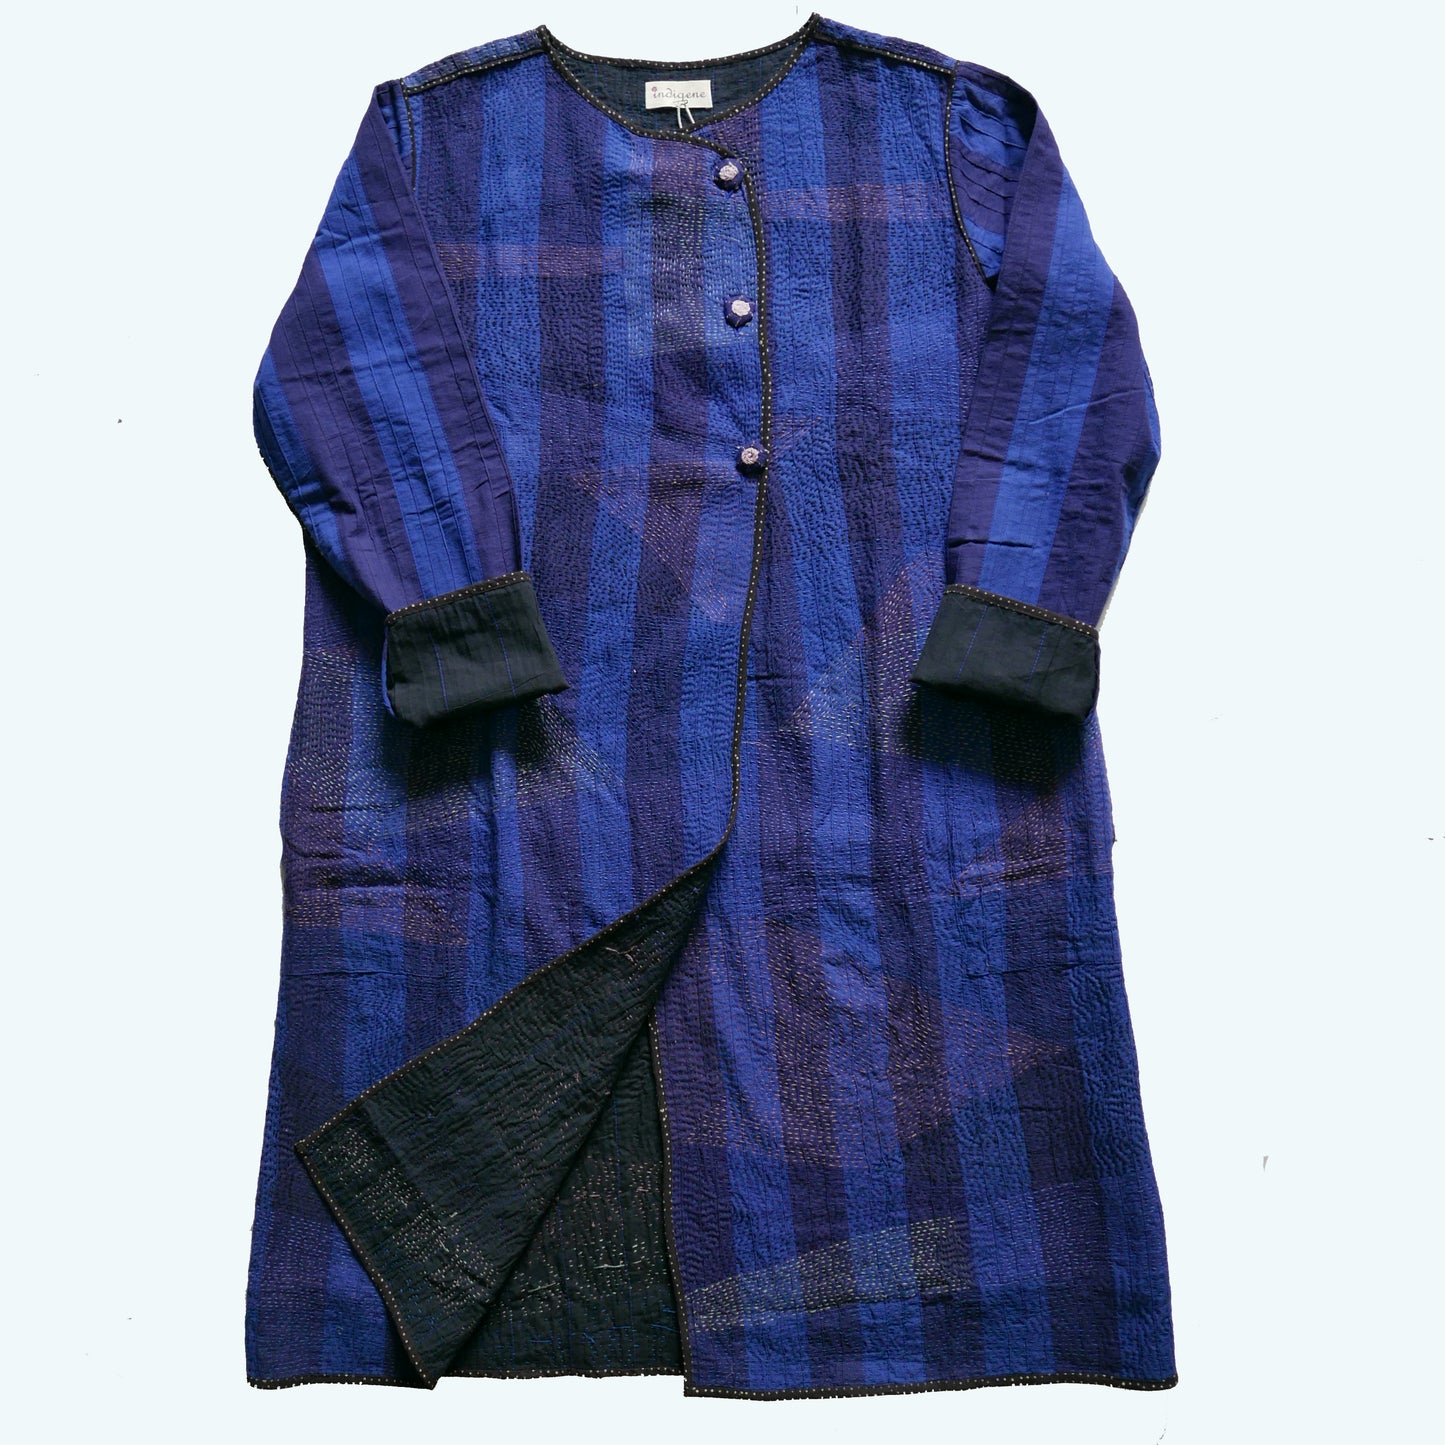 India, Indigene,Repurposed Cotton Embroidered Jacket